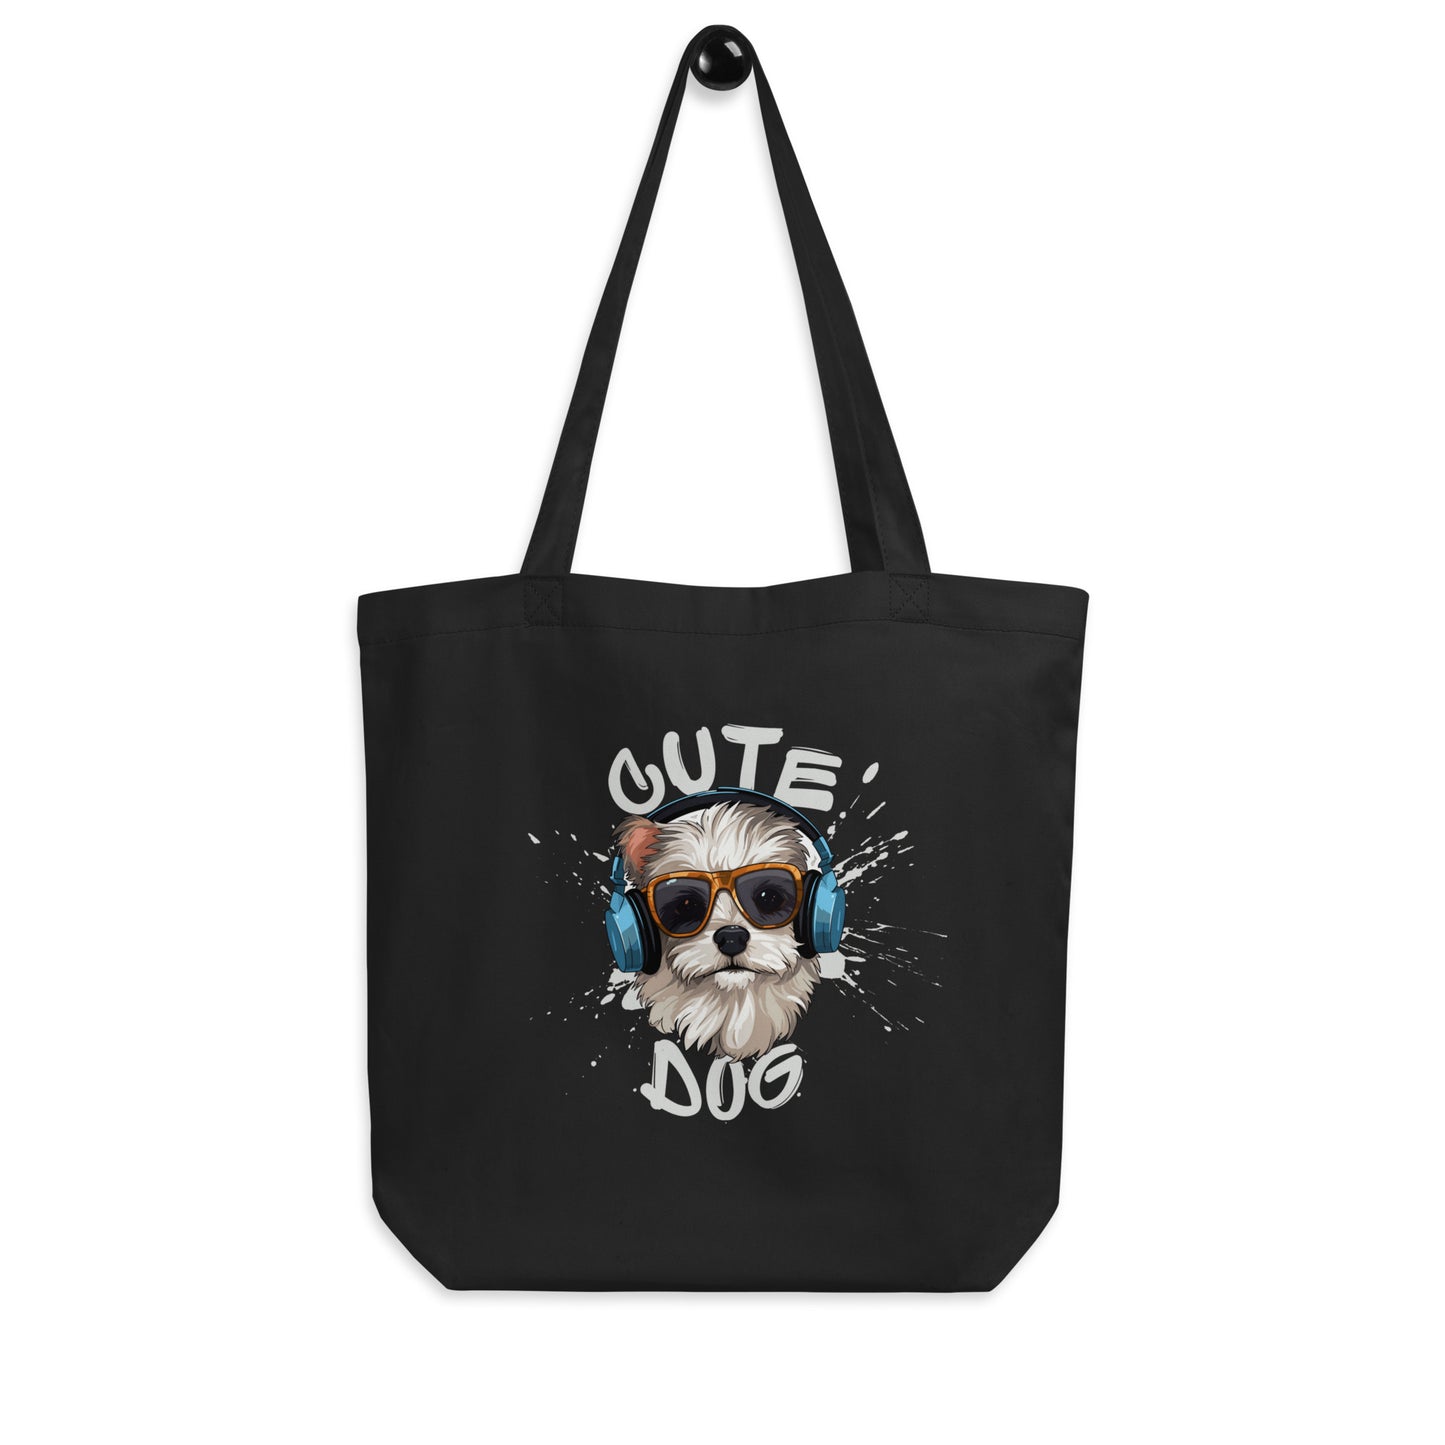 GoodTime Eco Tote Bag